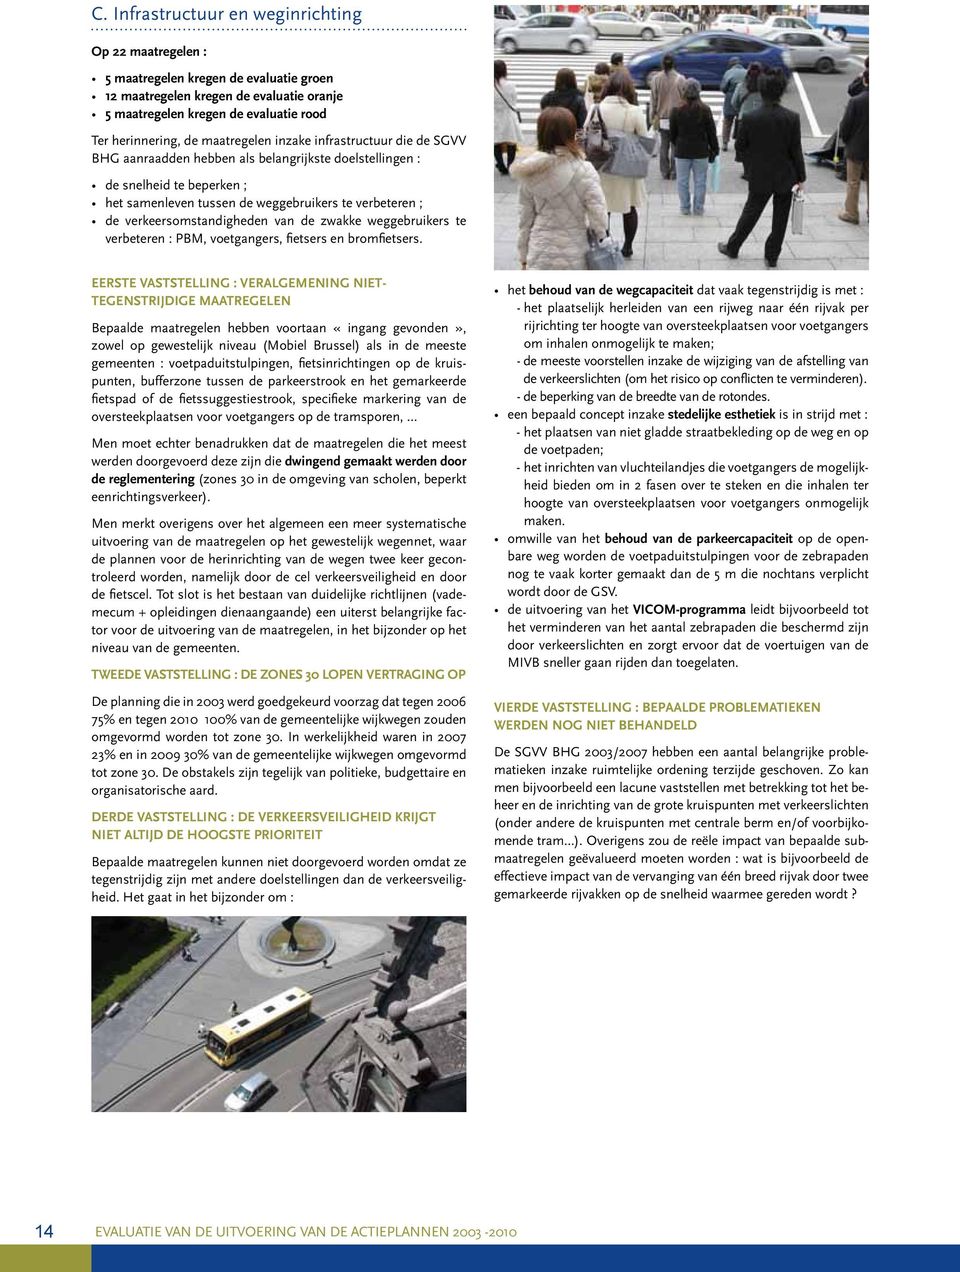 verkeersomstandigheden van de zwakke weggebruikers te verbeteren : PBM, voetgangers, fietsers en bromfietsers.